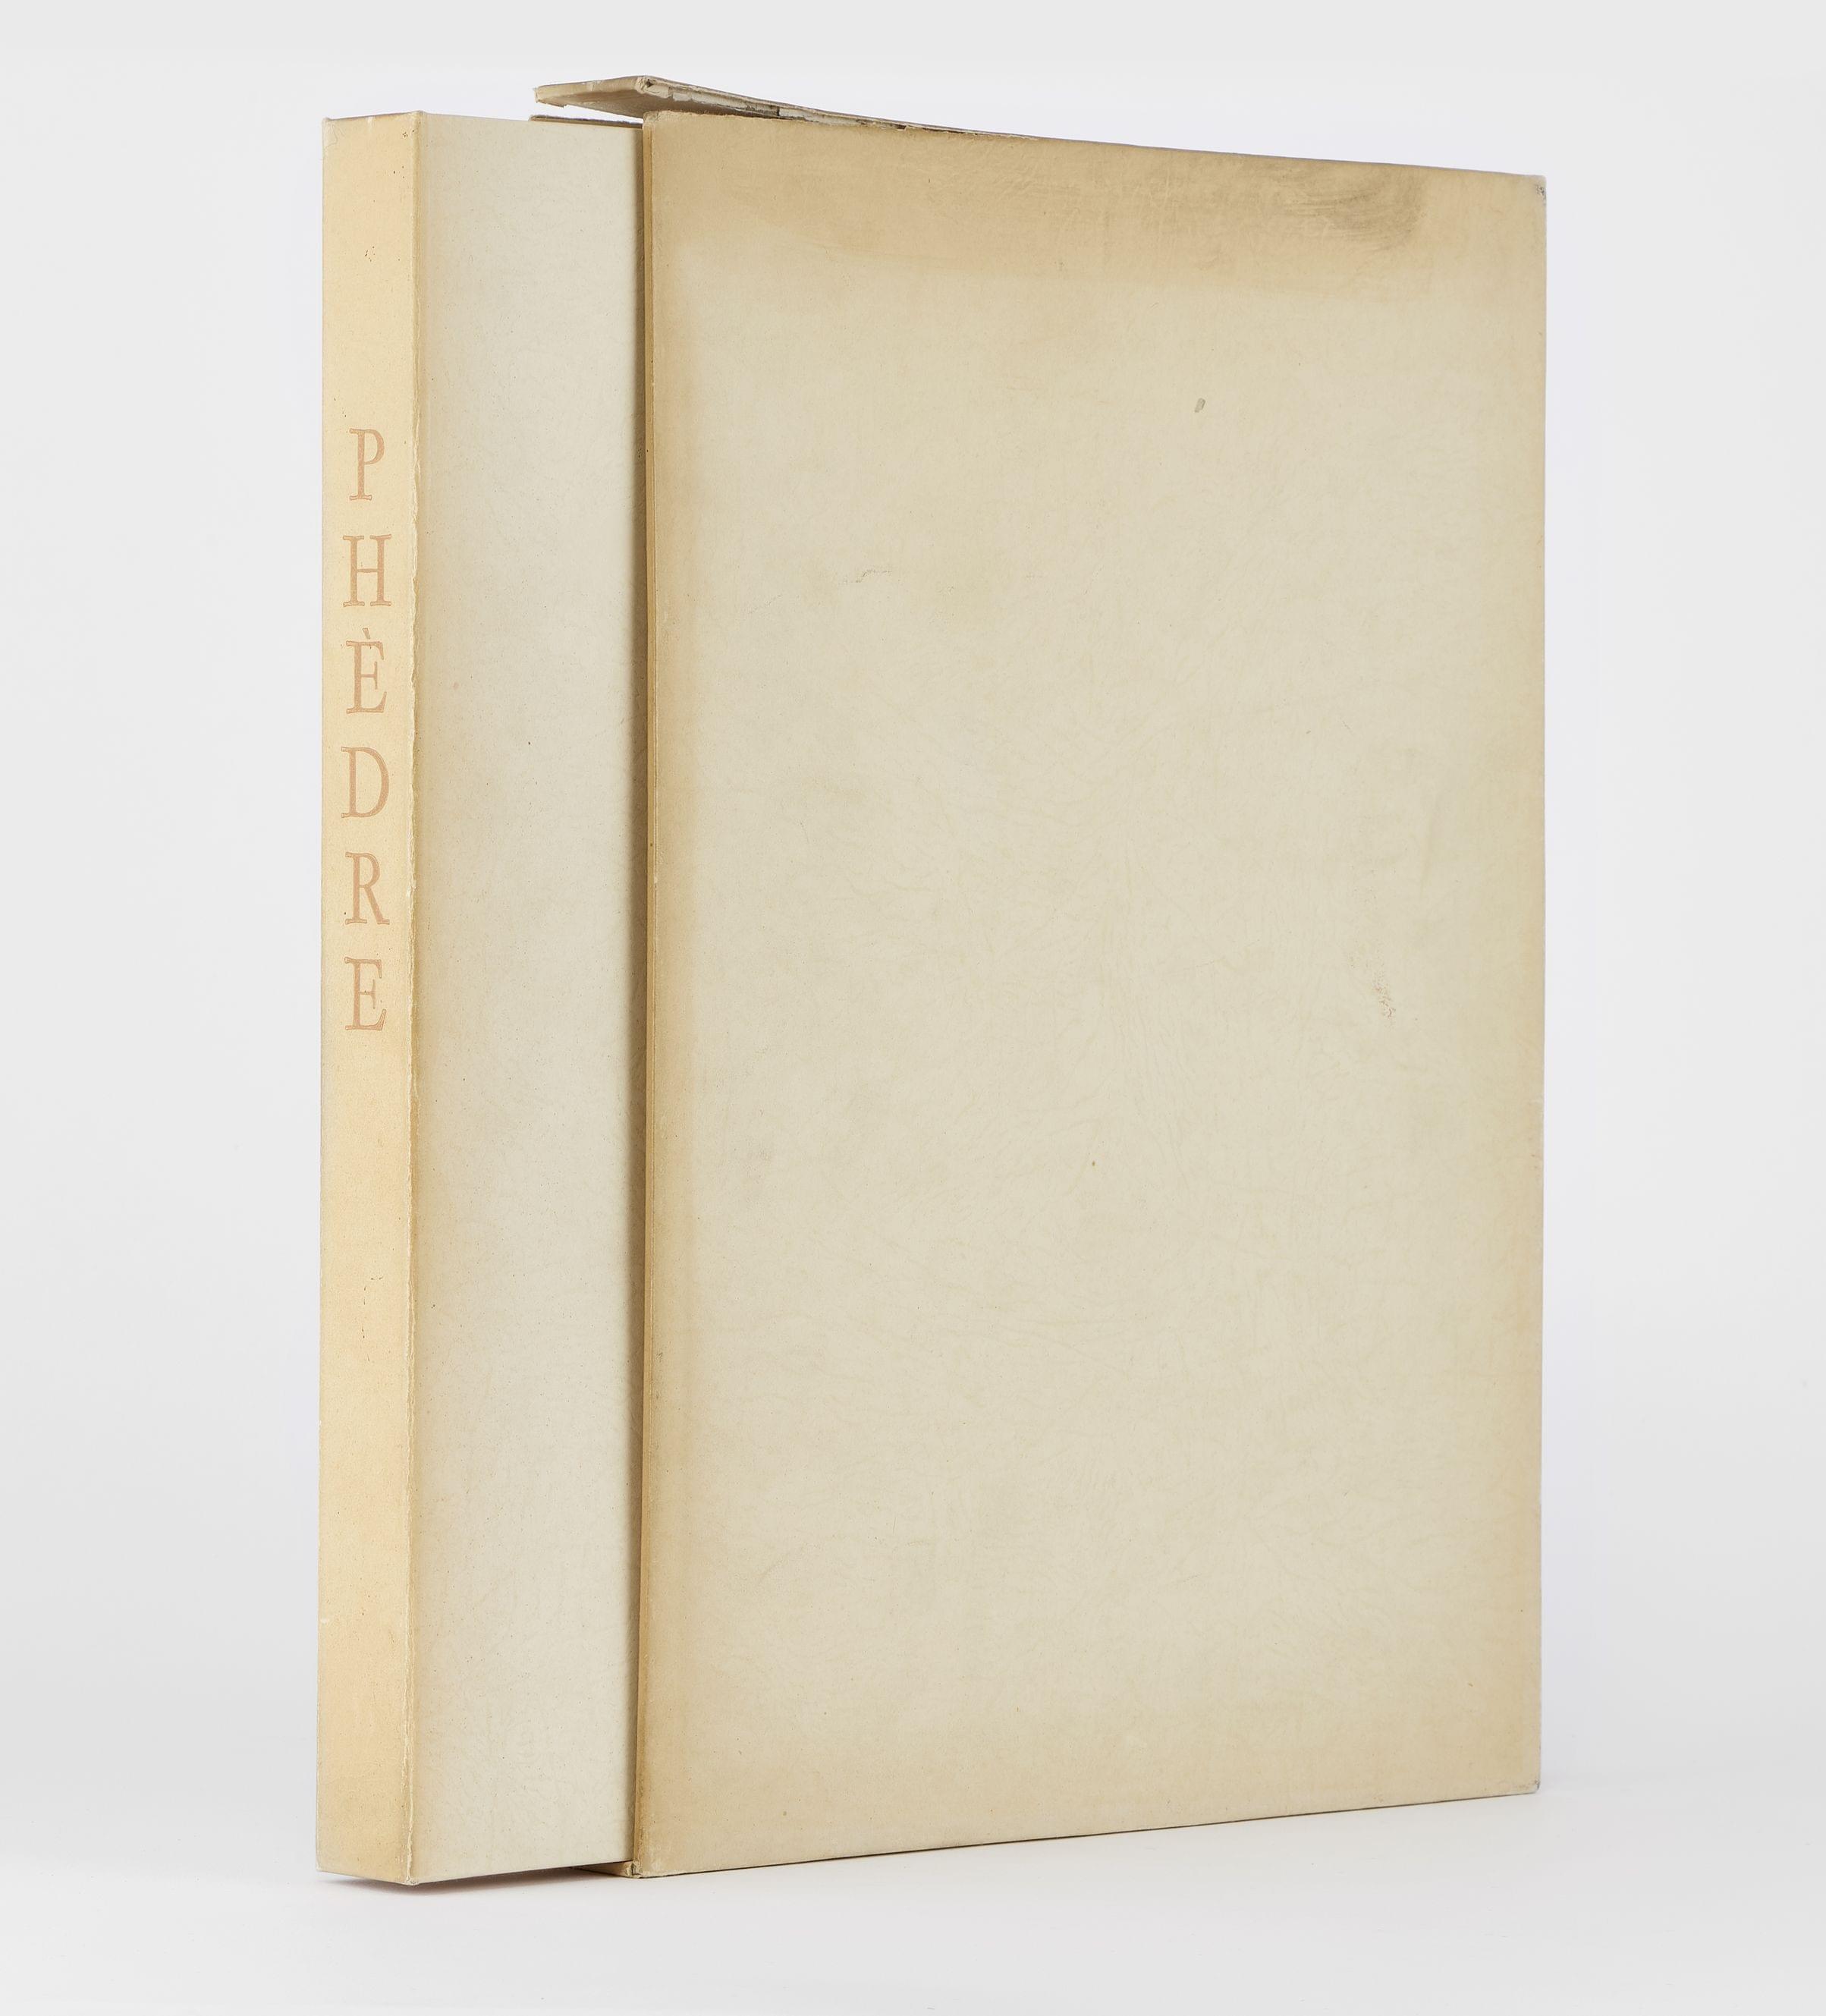 RACINE (Jean): Phèdre. Illustrations de lith. originales de Rodolphe-Théophile BOSSHARD. Lausanne, André Gonin, 1943